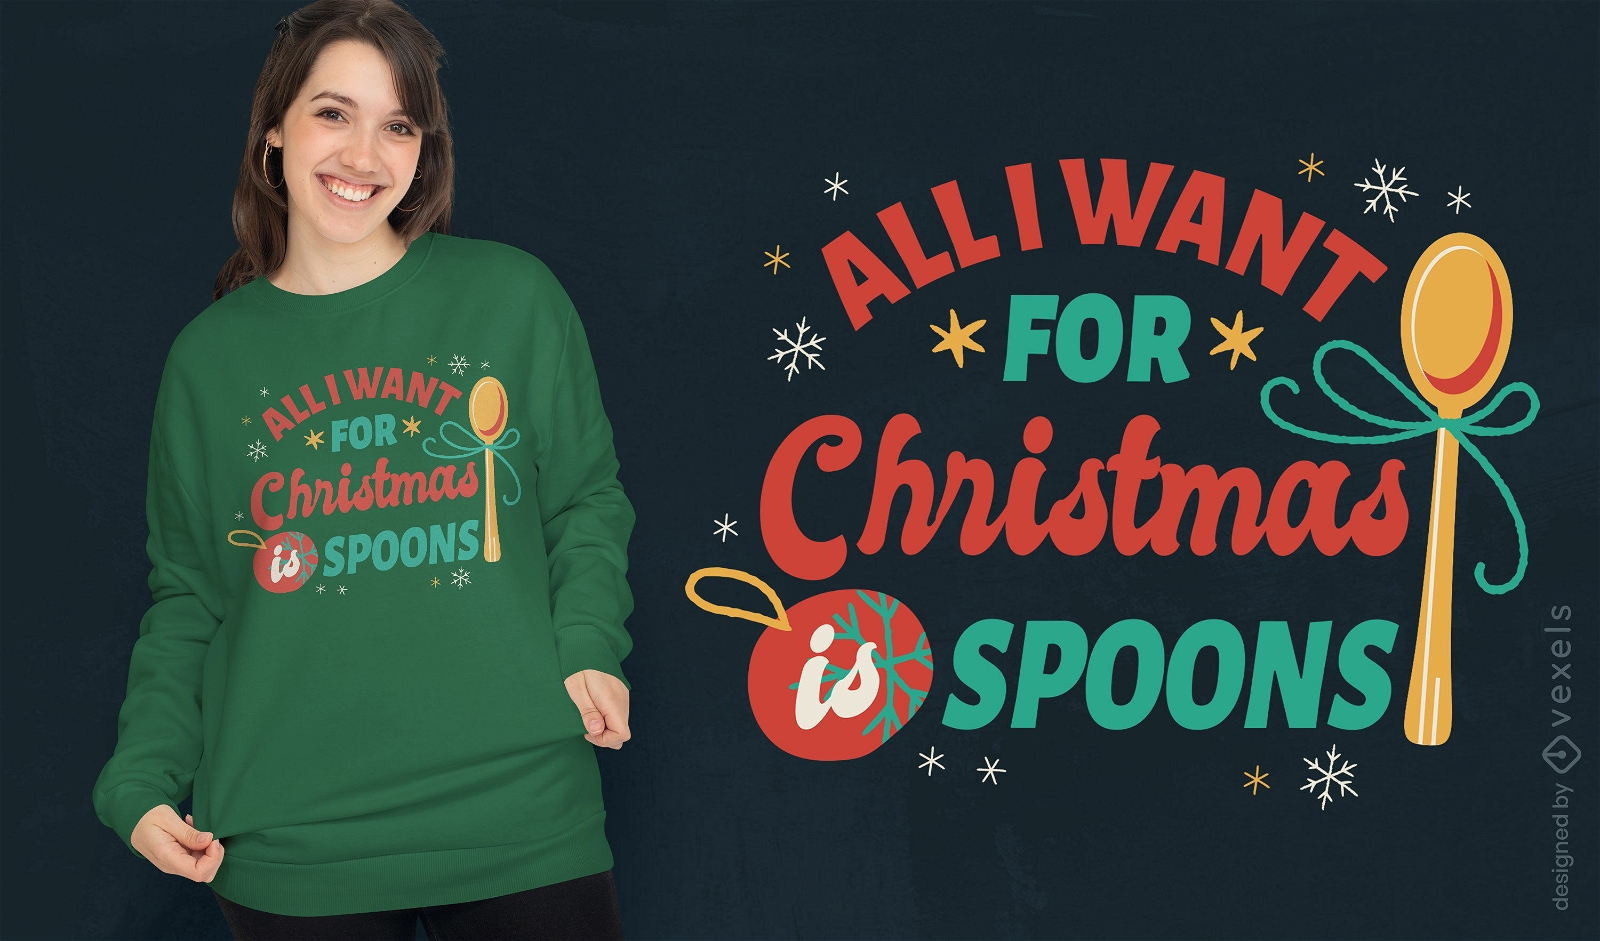 Diseño de camiseta de cucharas para Navidad.